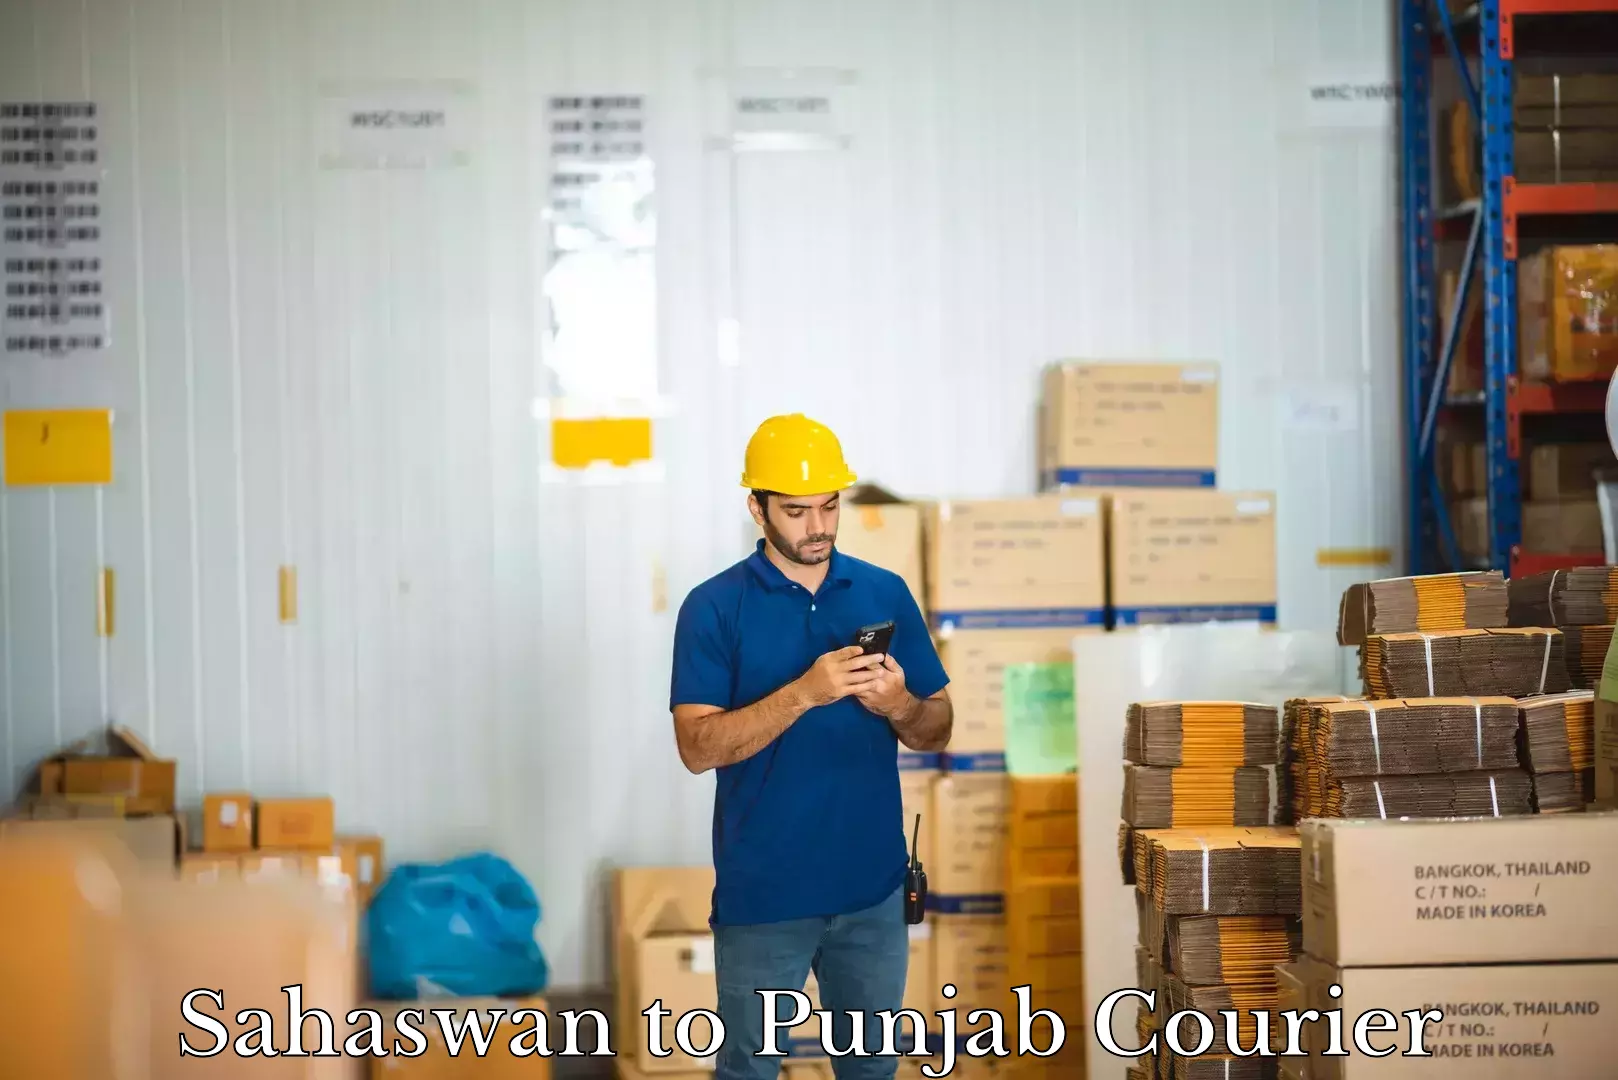 Luggage shipping planner in Sahaswan to Muktsar